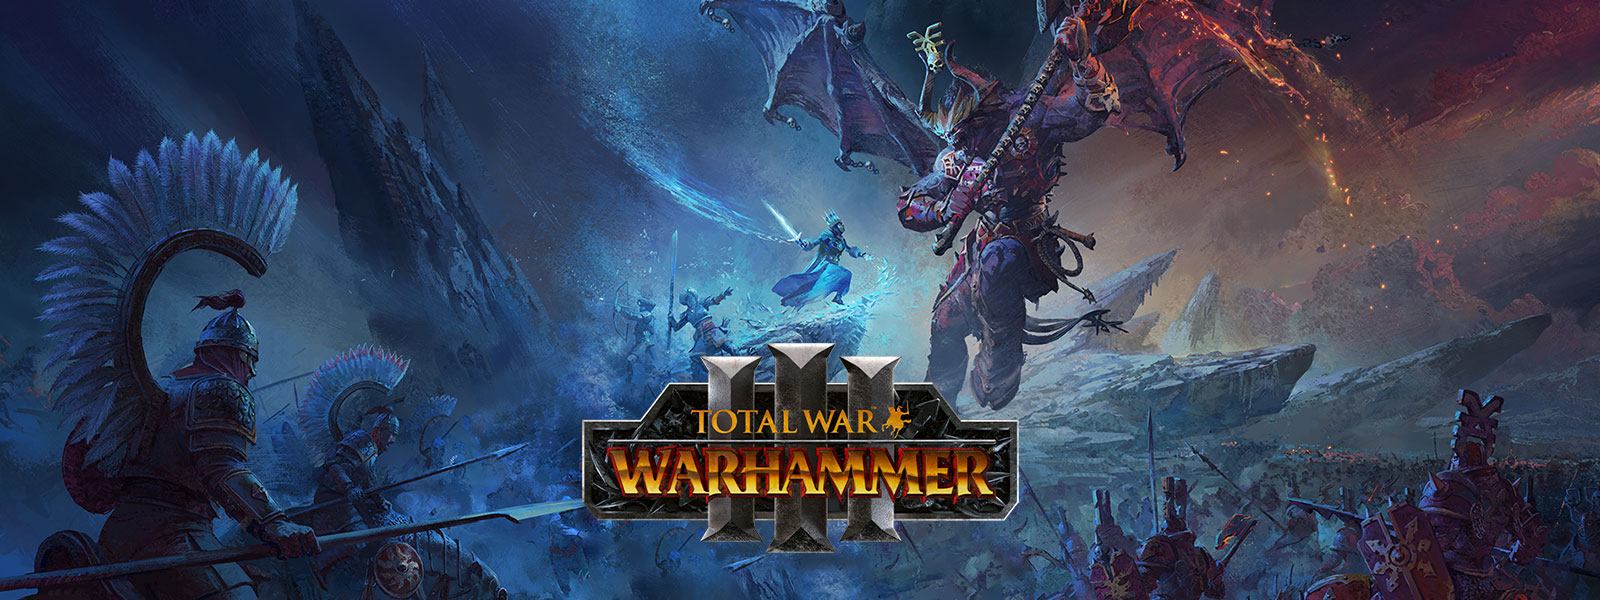 Total War Warhammer 3, Um feiticeiro de gelo enfrenta um dragão demónio gigante sobre um campo de batalha.